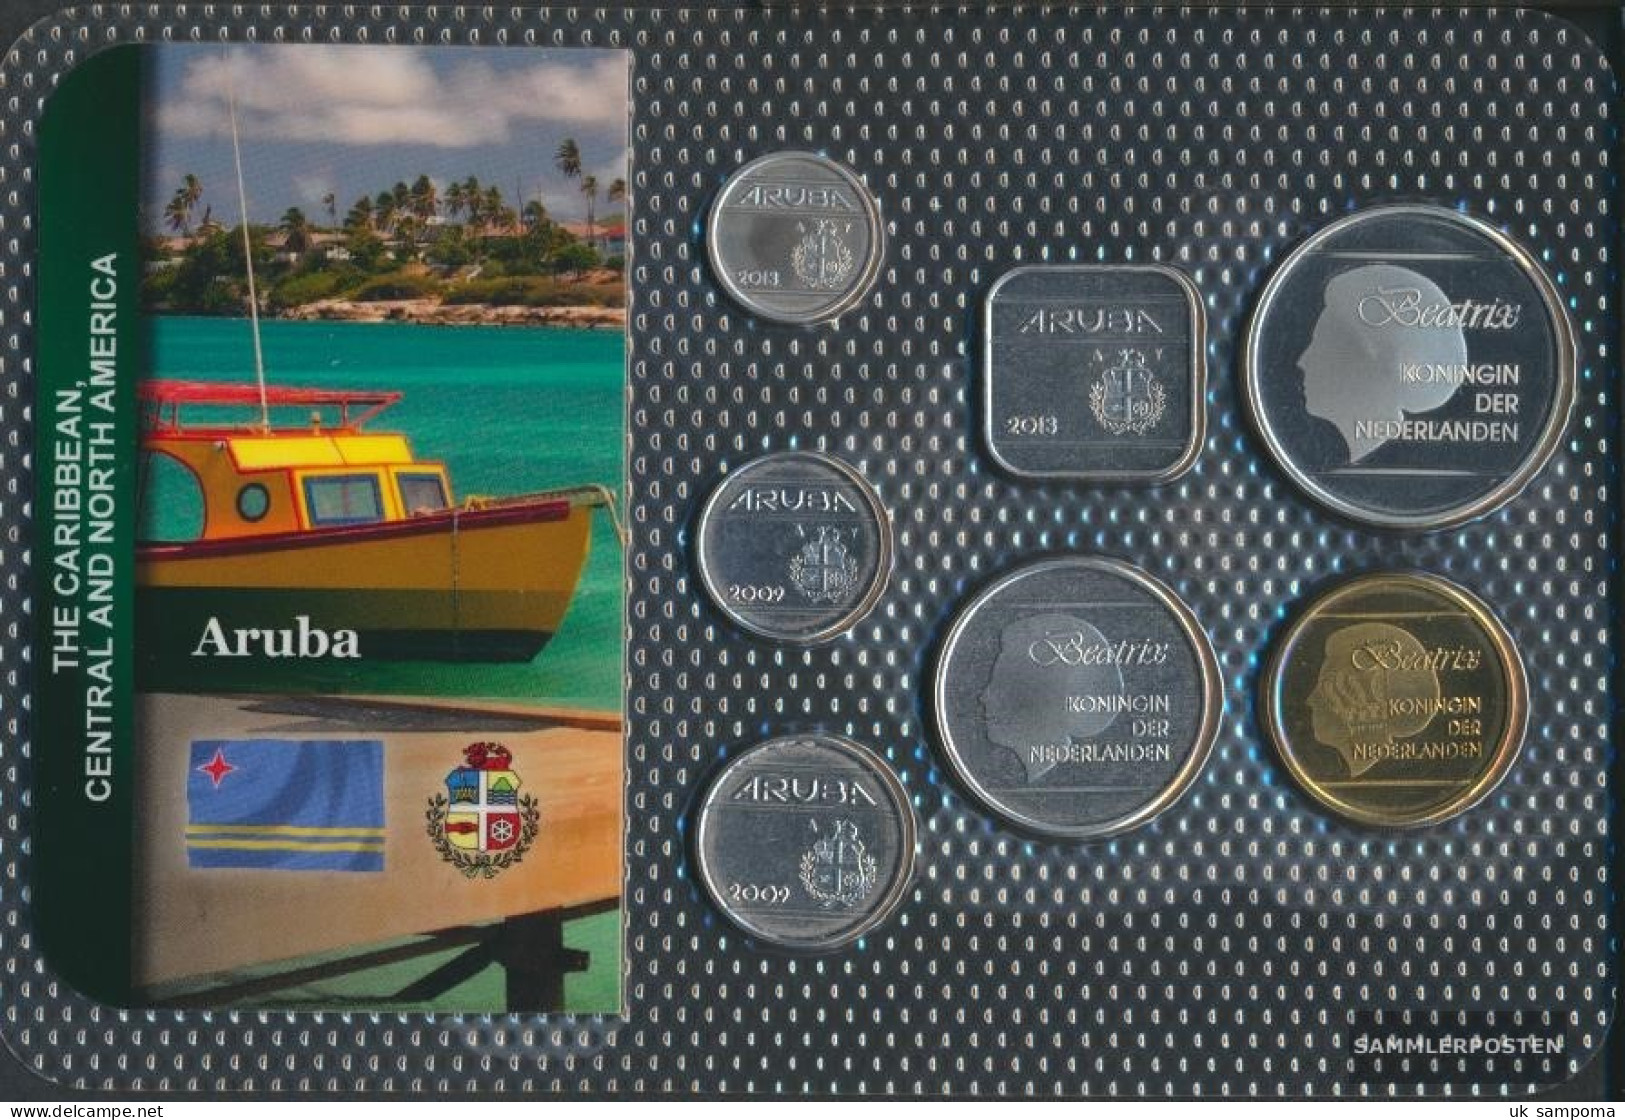 Aruba Stgl./unzirkuliert Kursmünzen Stgl./unzirkuliert From 2005 5 CENT Until 5 Florin - Aruba